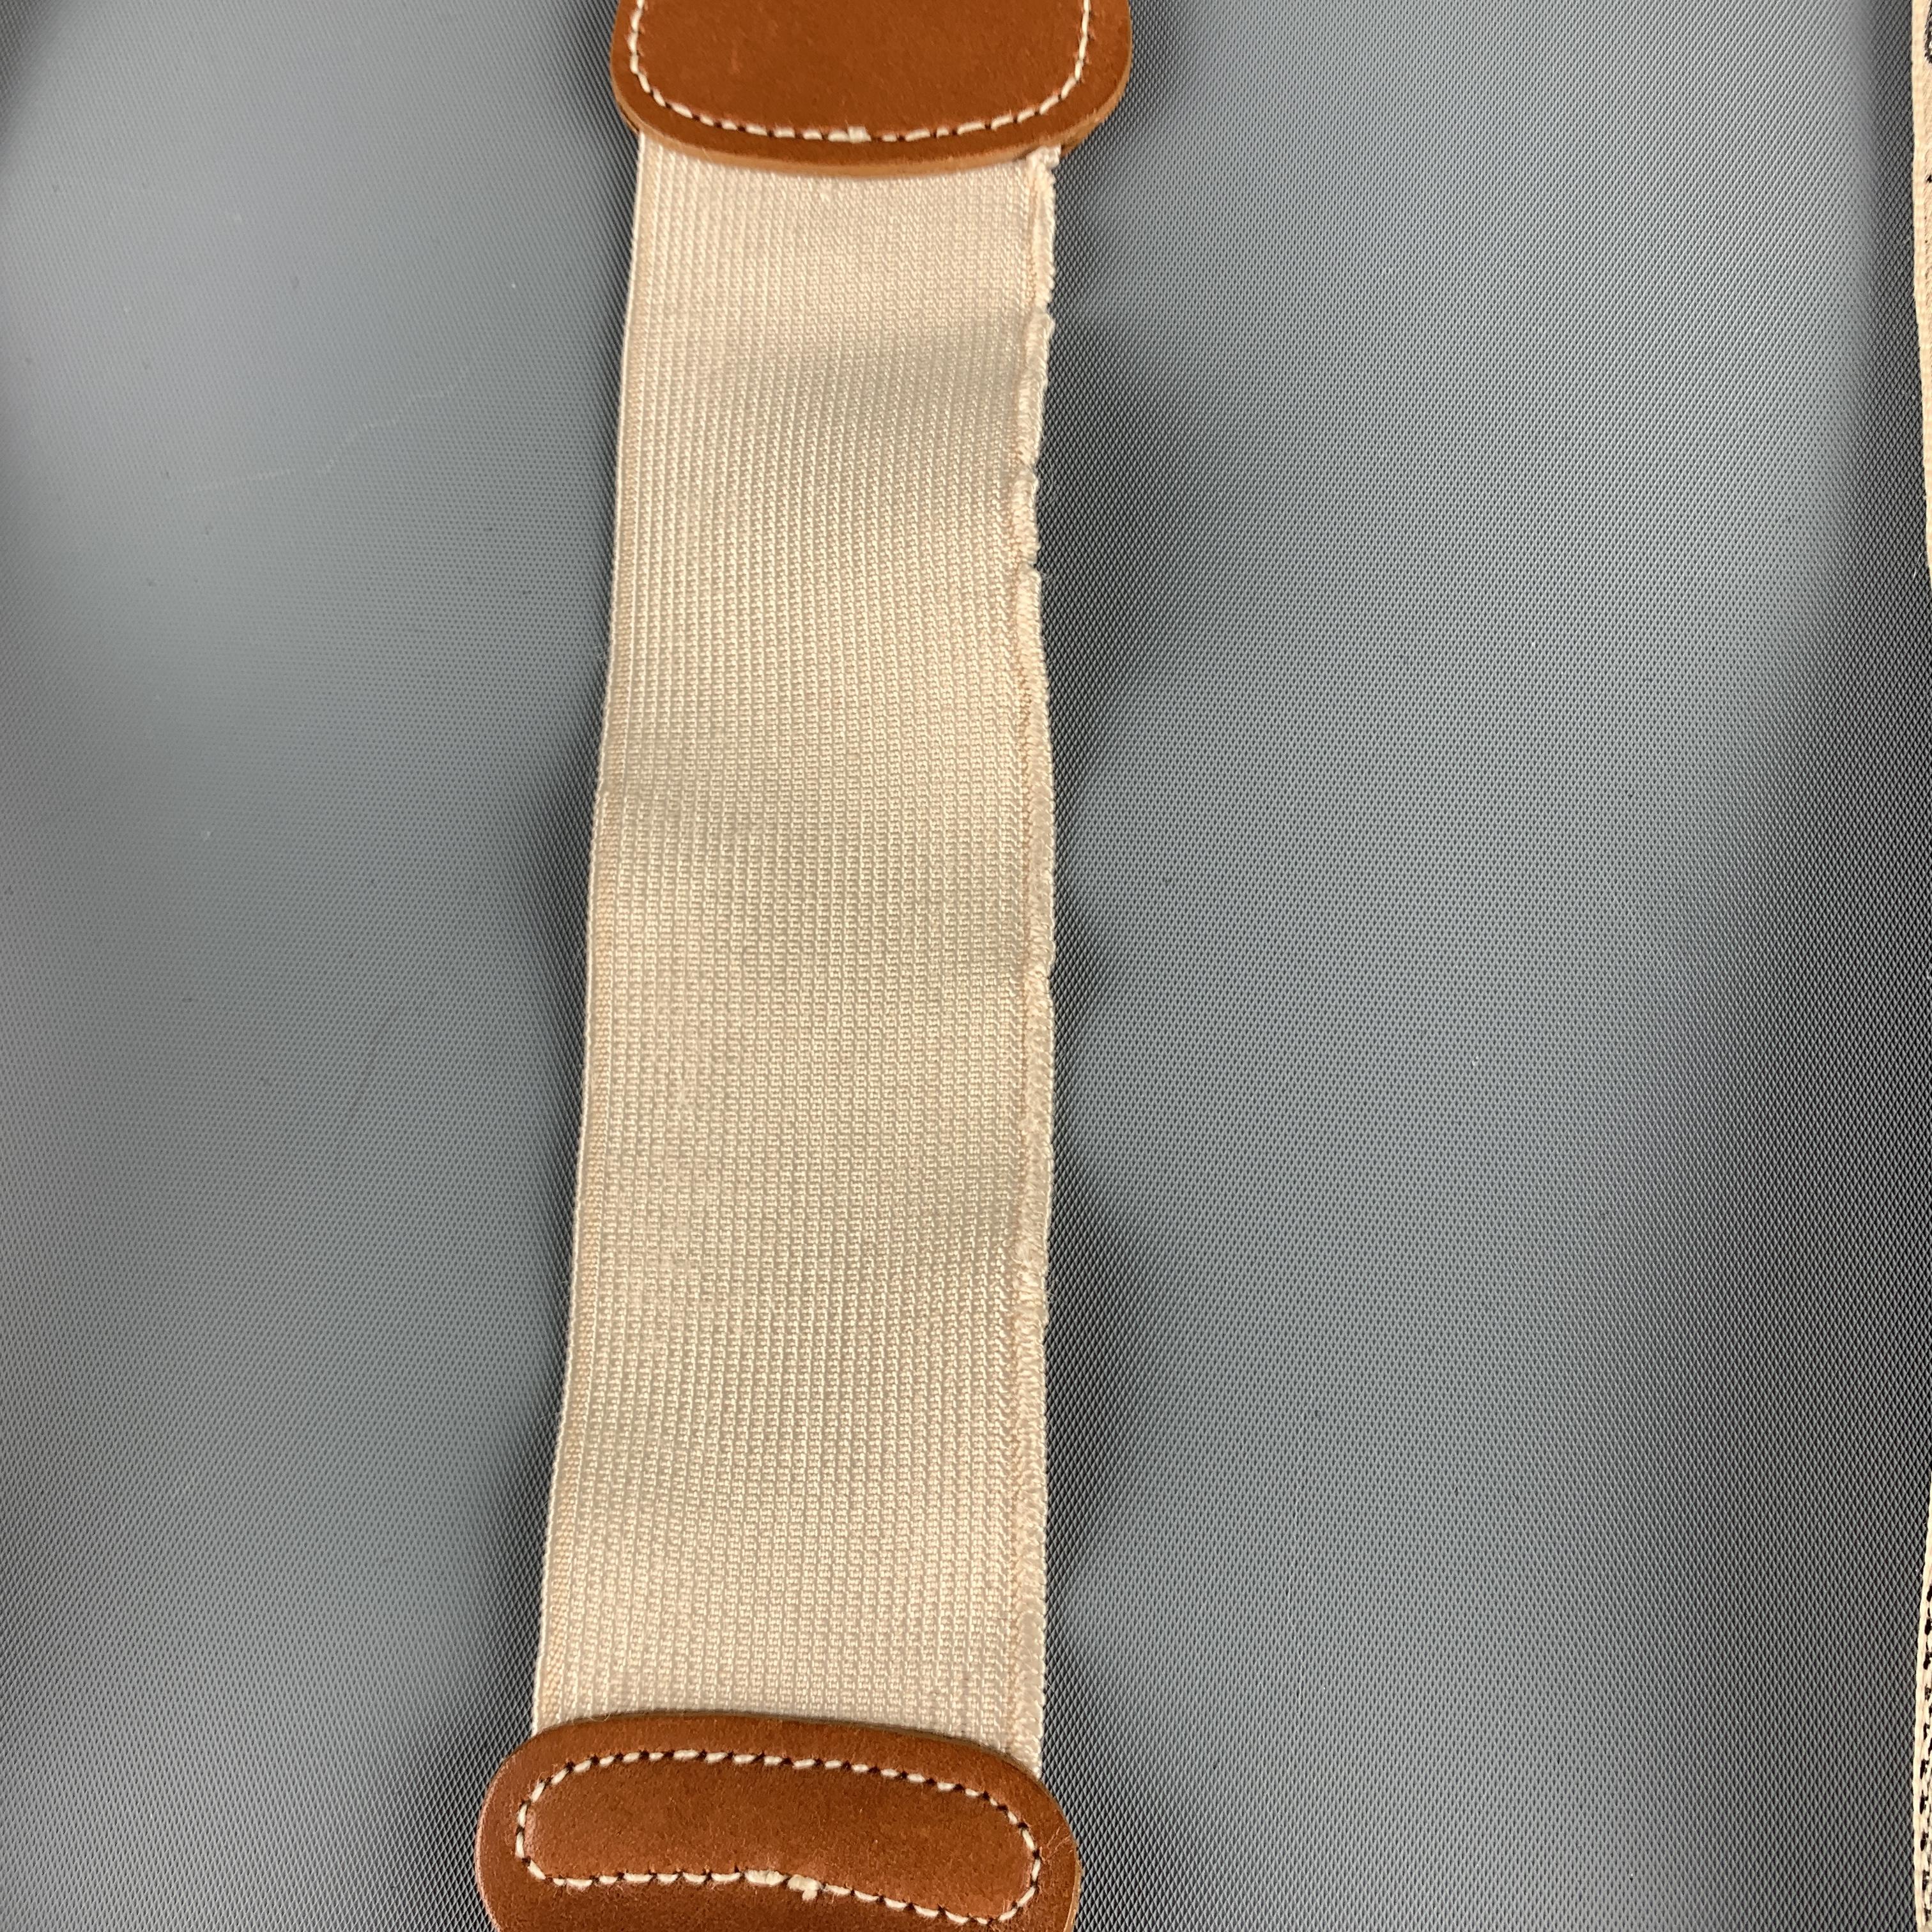 TRAFALGAR Beige Leather Trim Equestrian Ribbon Suspenders 2